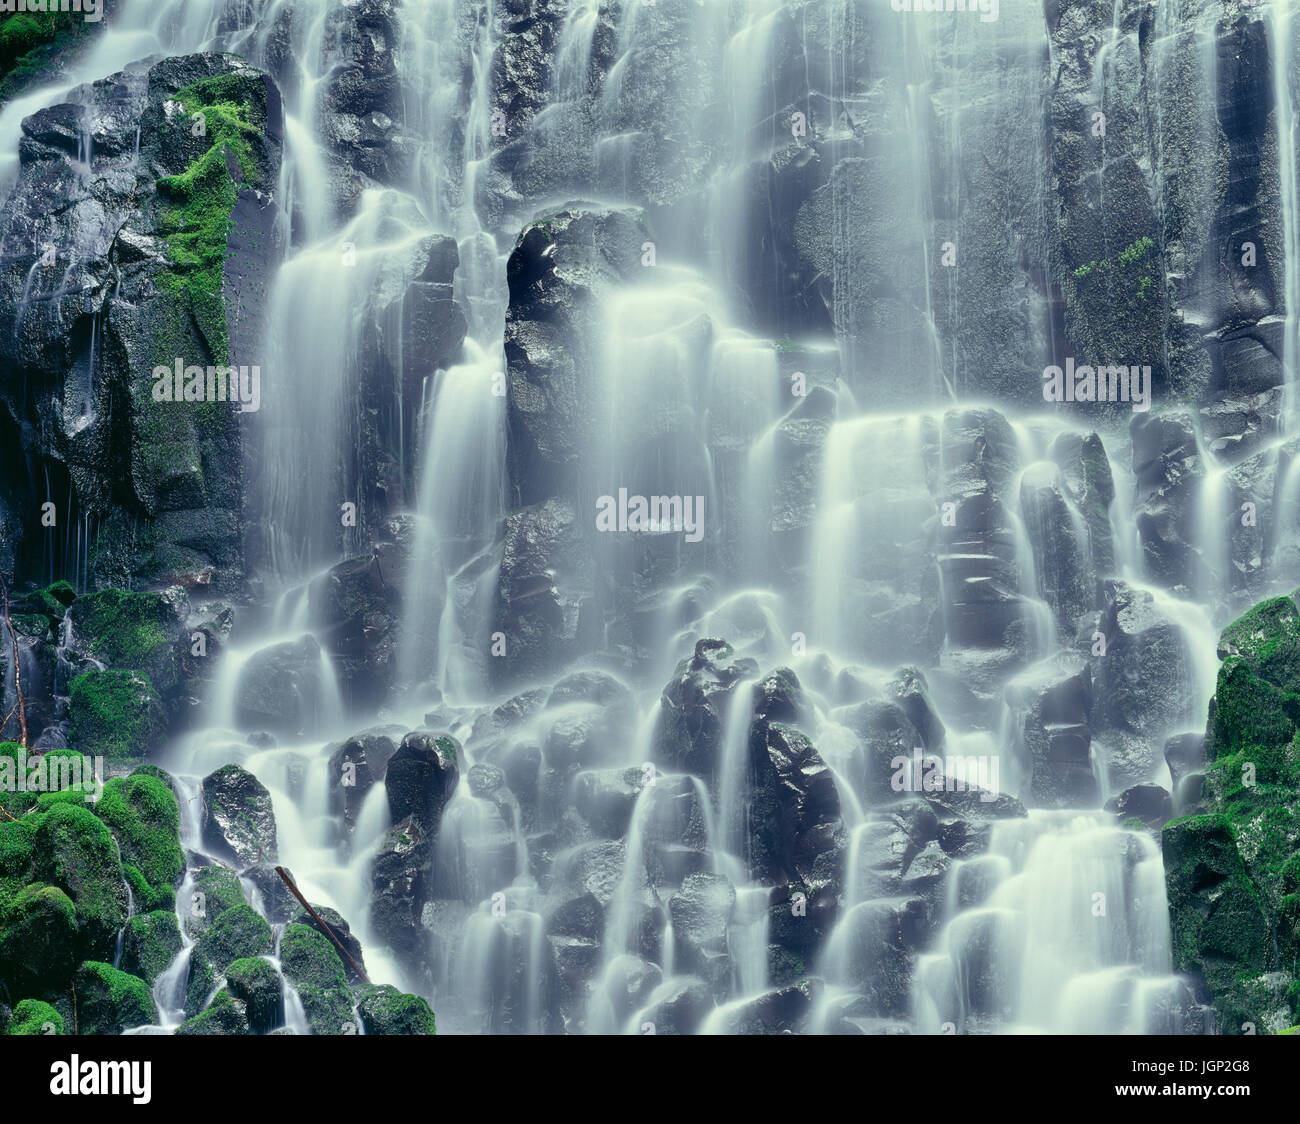 USA (Oregon), Mount Hood National Forest, Mount Hood Wilderness, Ramona Falls est formé par un petit ruisseau Tumbling sur une falaise de basalte columnaire moussu Banque D'Images